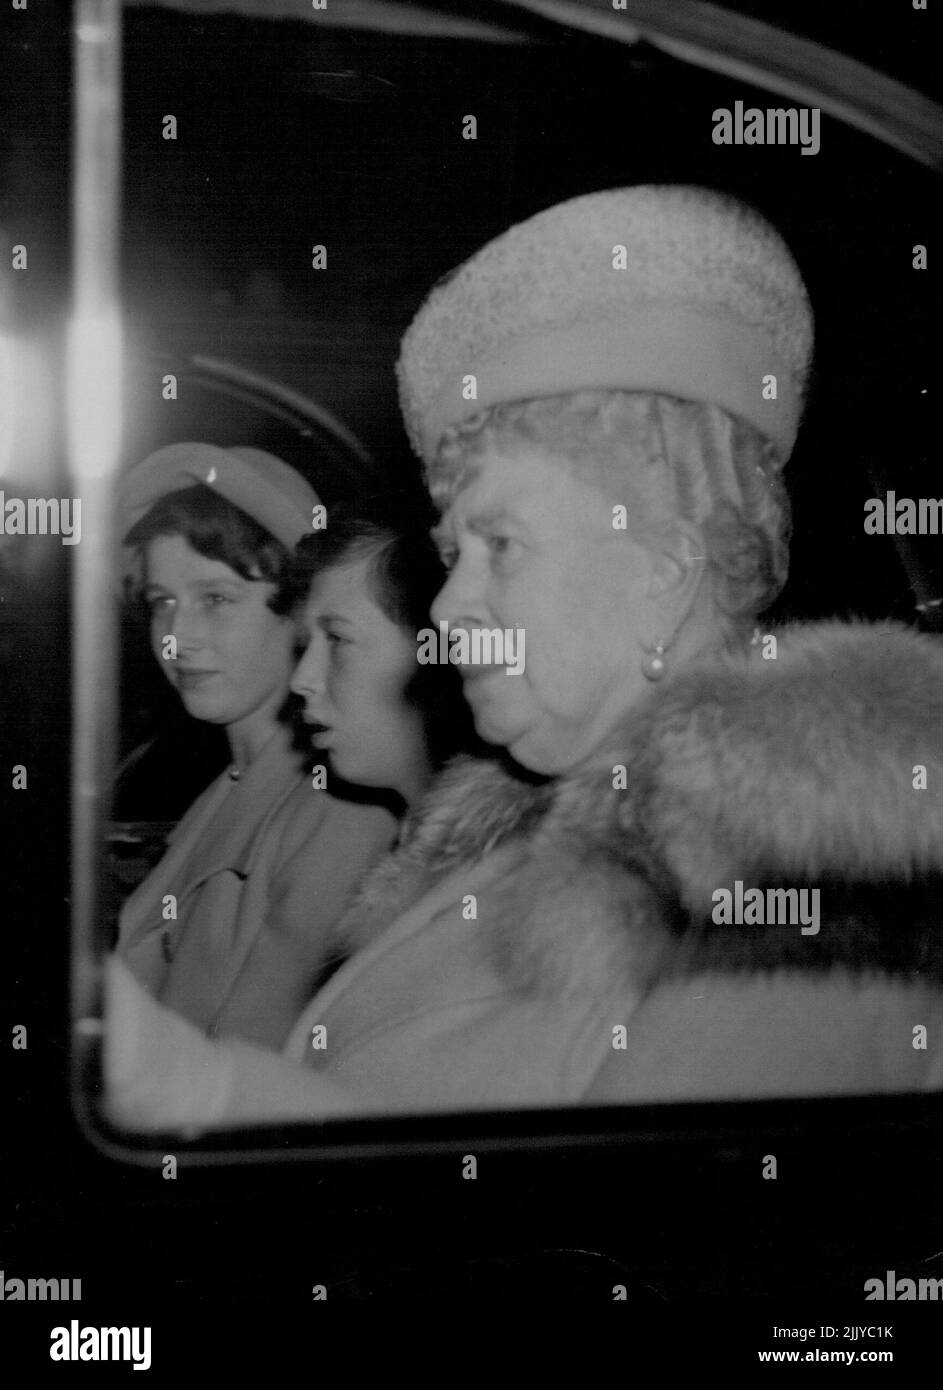 Arrivo della Regina Maria e del Duca di Kent -- la Regina Maria e il giovane Duca di Kent arrivano a Buckingham Palace per la cerimonia di Cristianesimo della Principessa Anne questo pomeriggio ottobre 21. Con loro in macchina è la sorella del duca, la principessa Alexandra. Ottobre 21, 1950. (Foto di stampa associata). Foto Stock